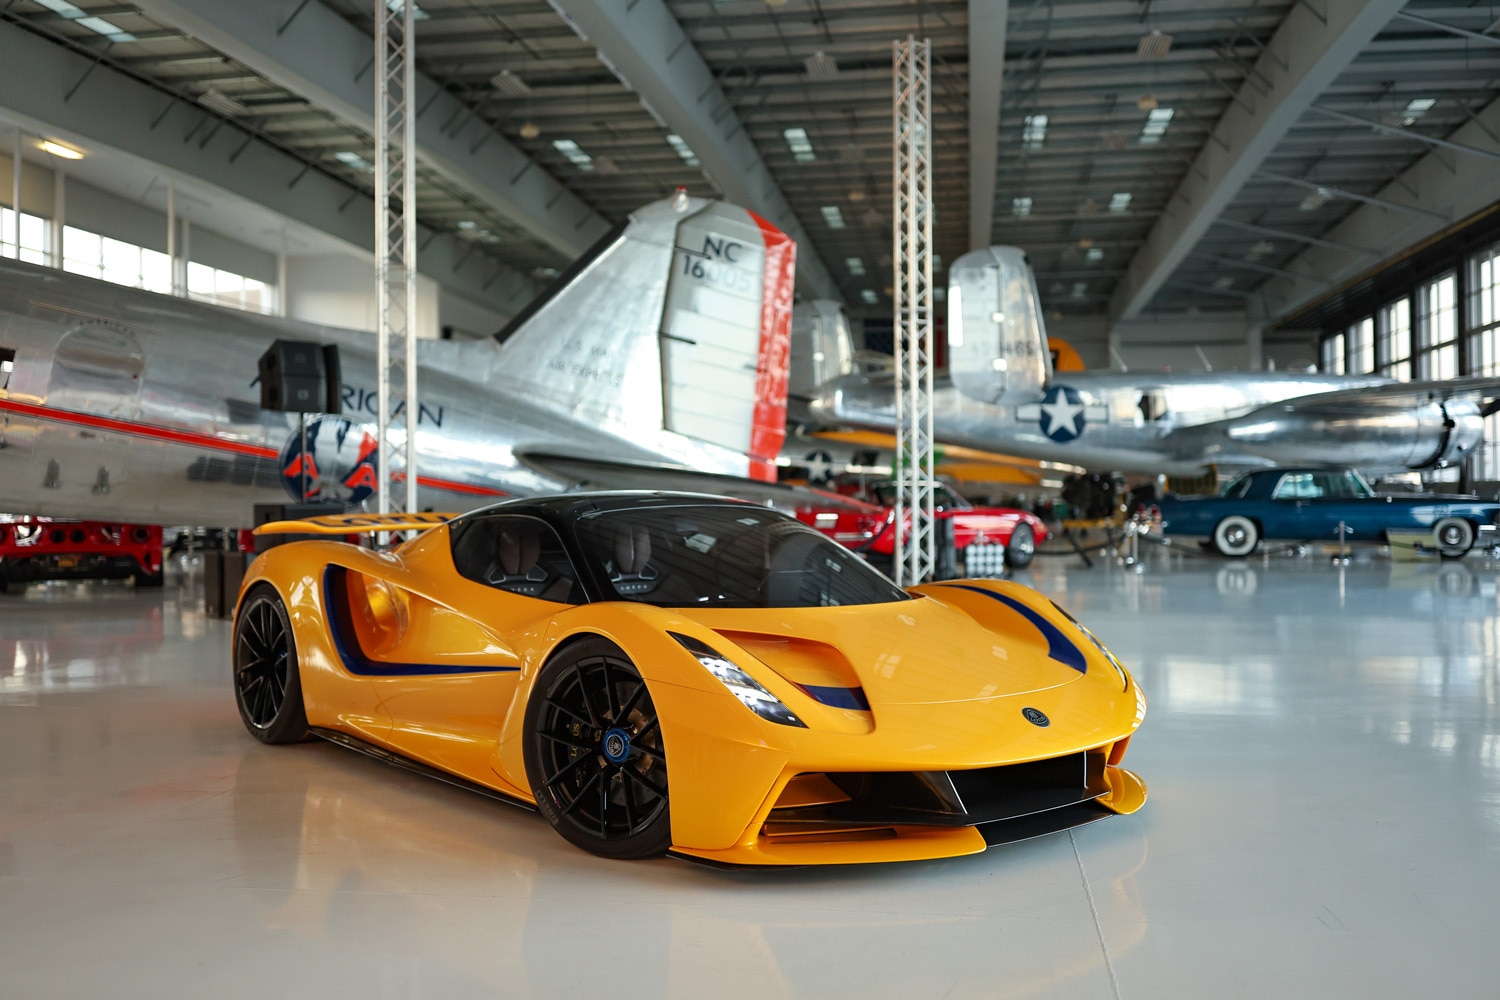 Lotus Evija parked in hangar by airplanes